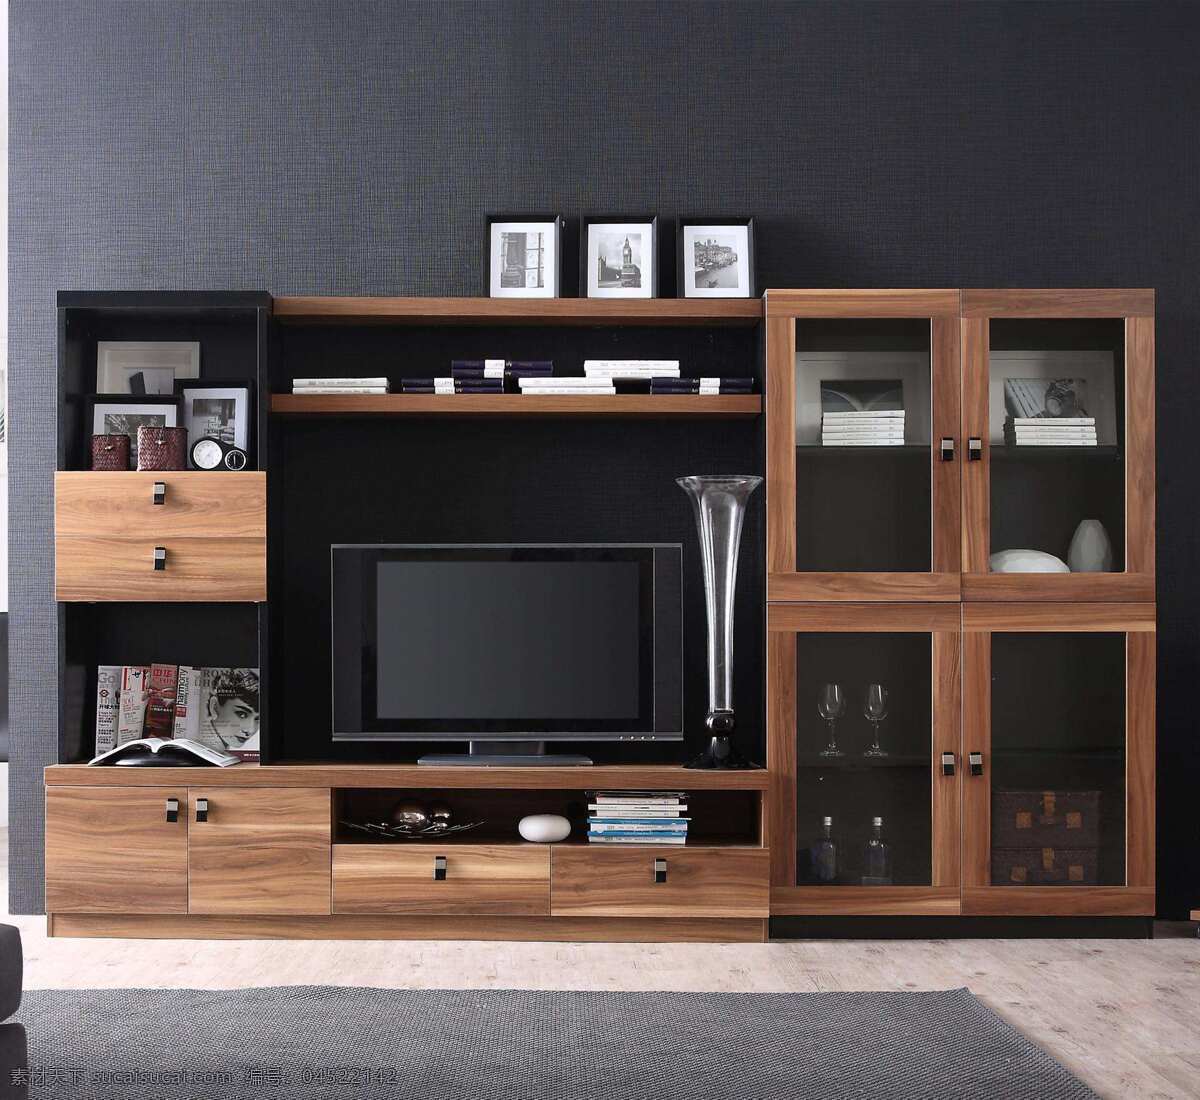 木制家具 电视柜 家具 沙发 效果图 台灯 桌子 书房 书柜 博古架 环境设计 室内设计